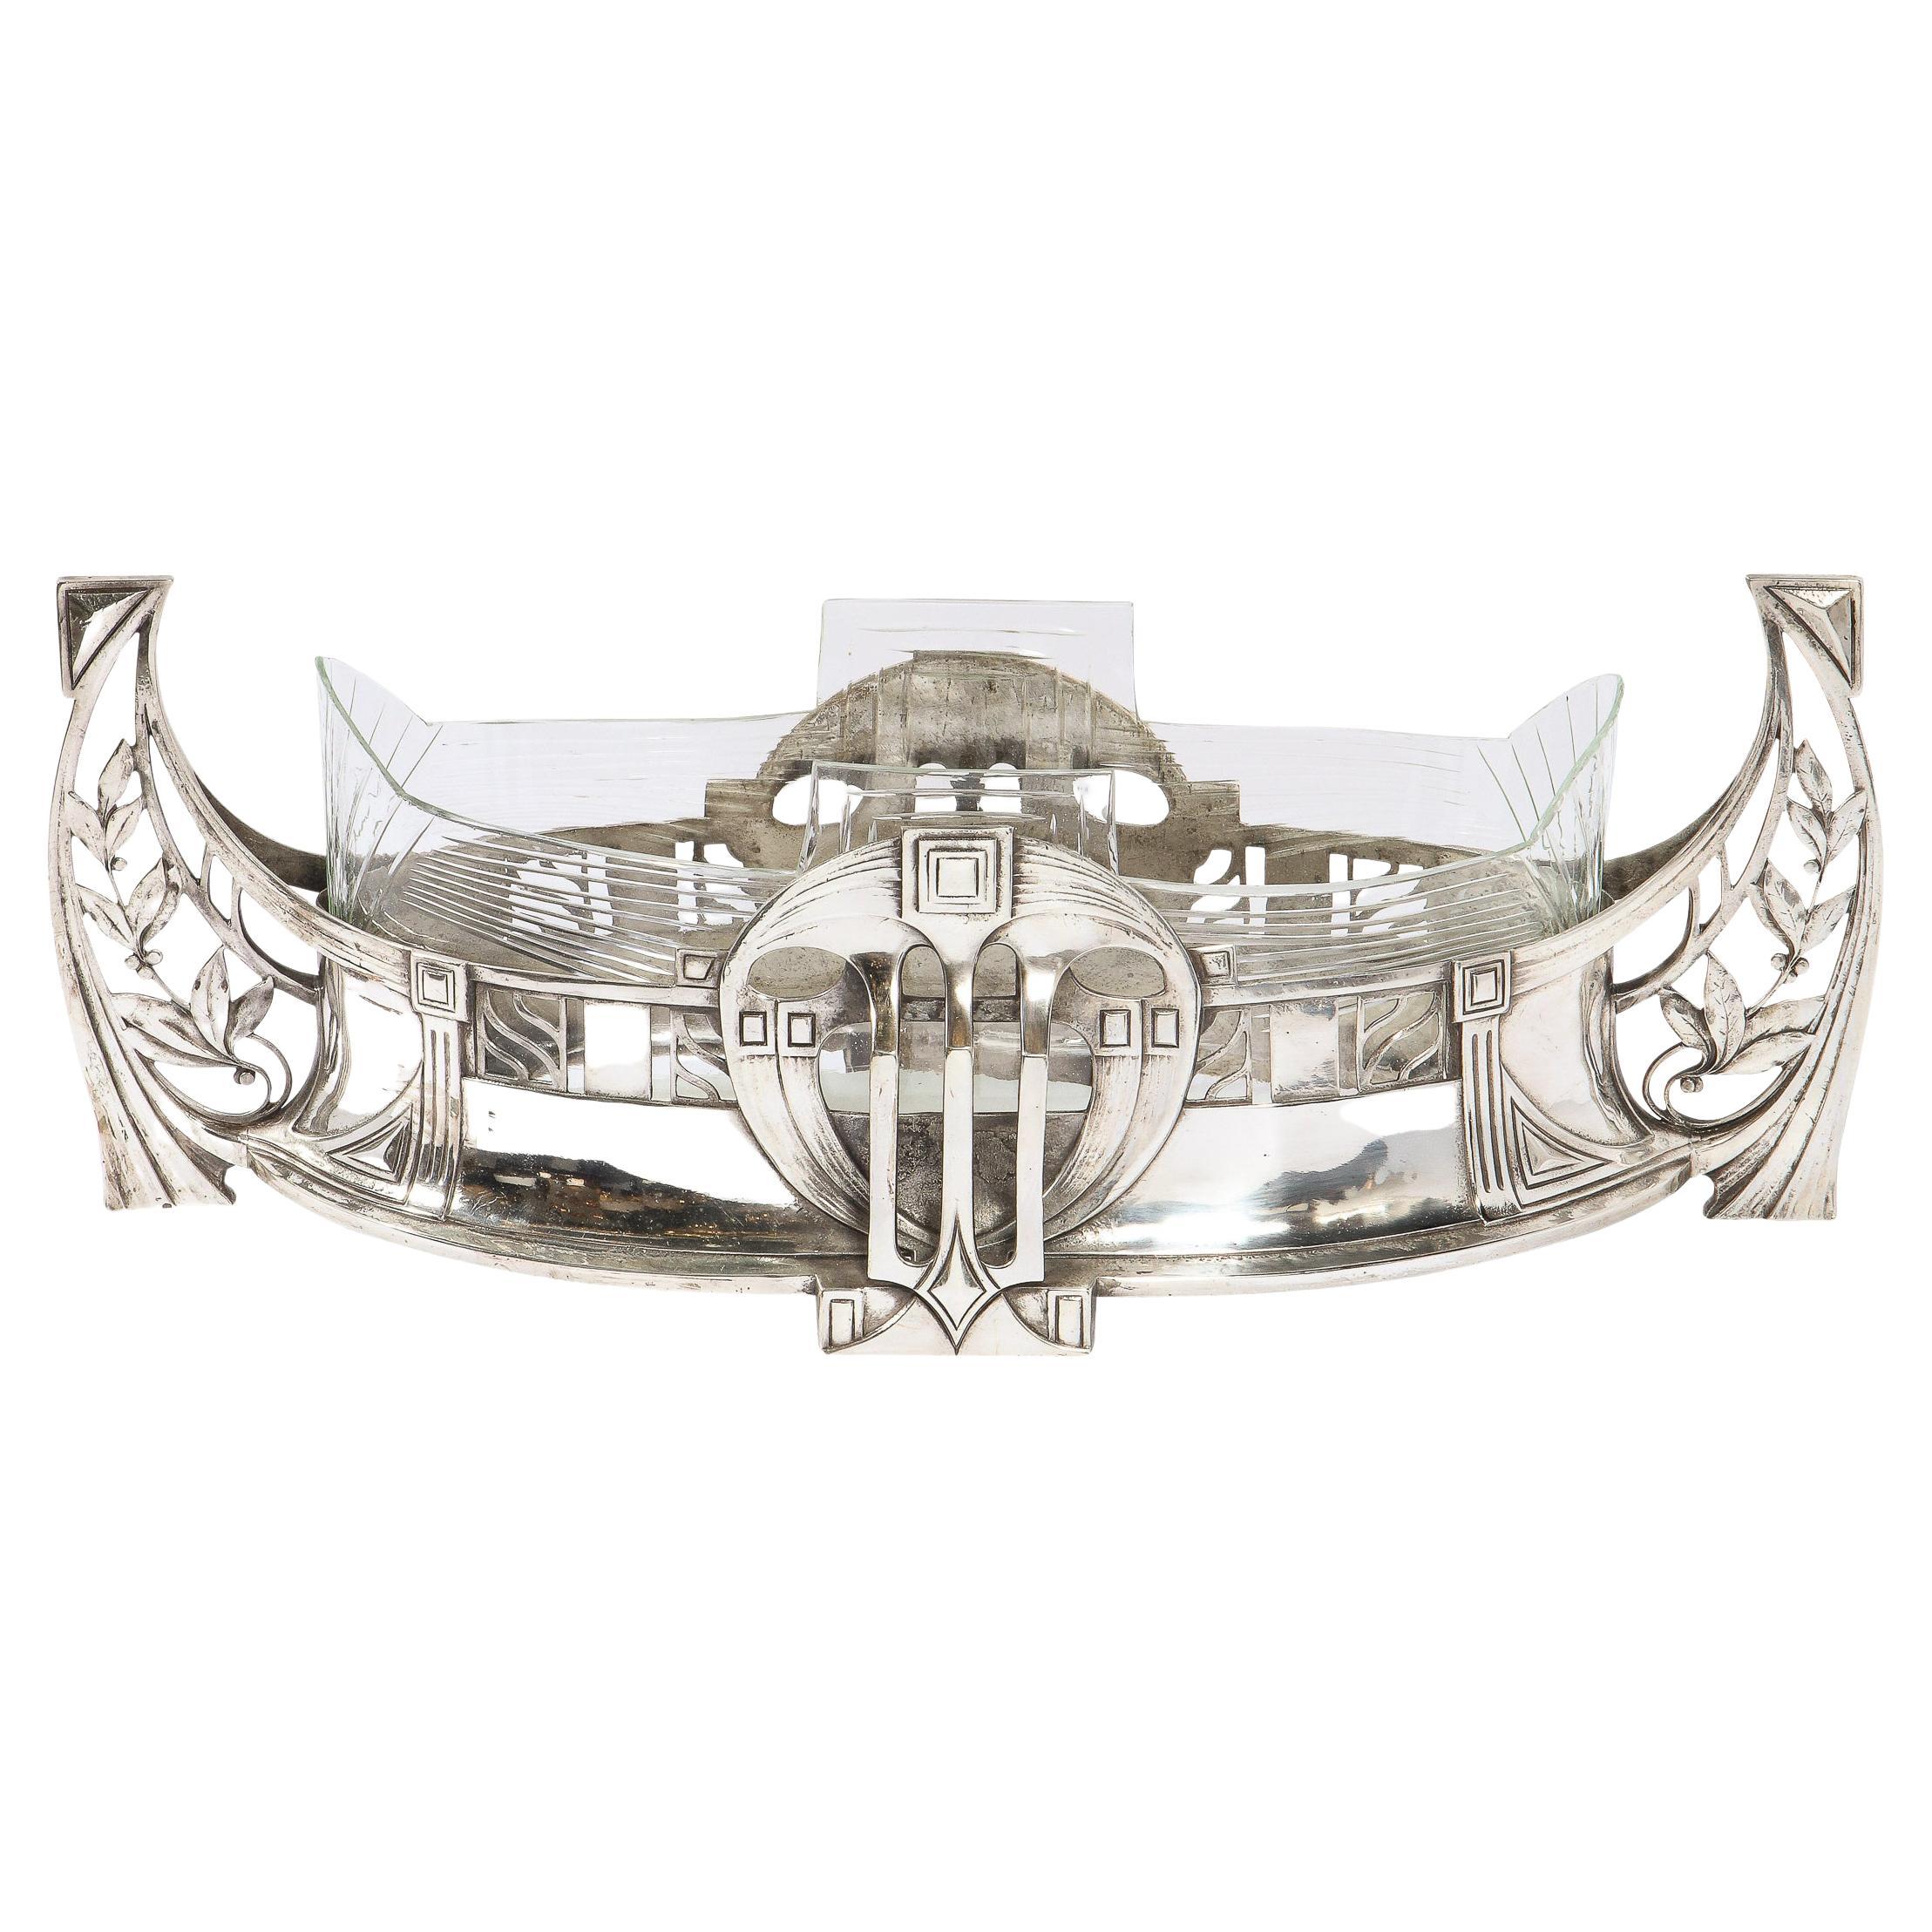 WMF Art Deco Sculptural Silverplate Centerpiece w/ Geometric & Foliate Motifs For Sale